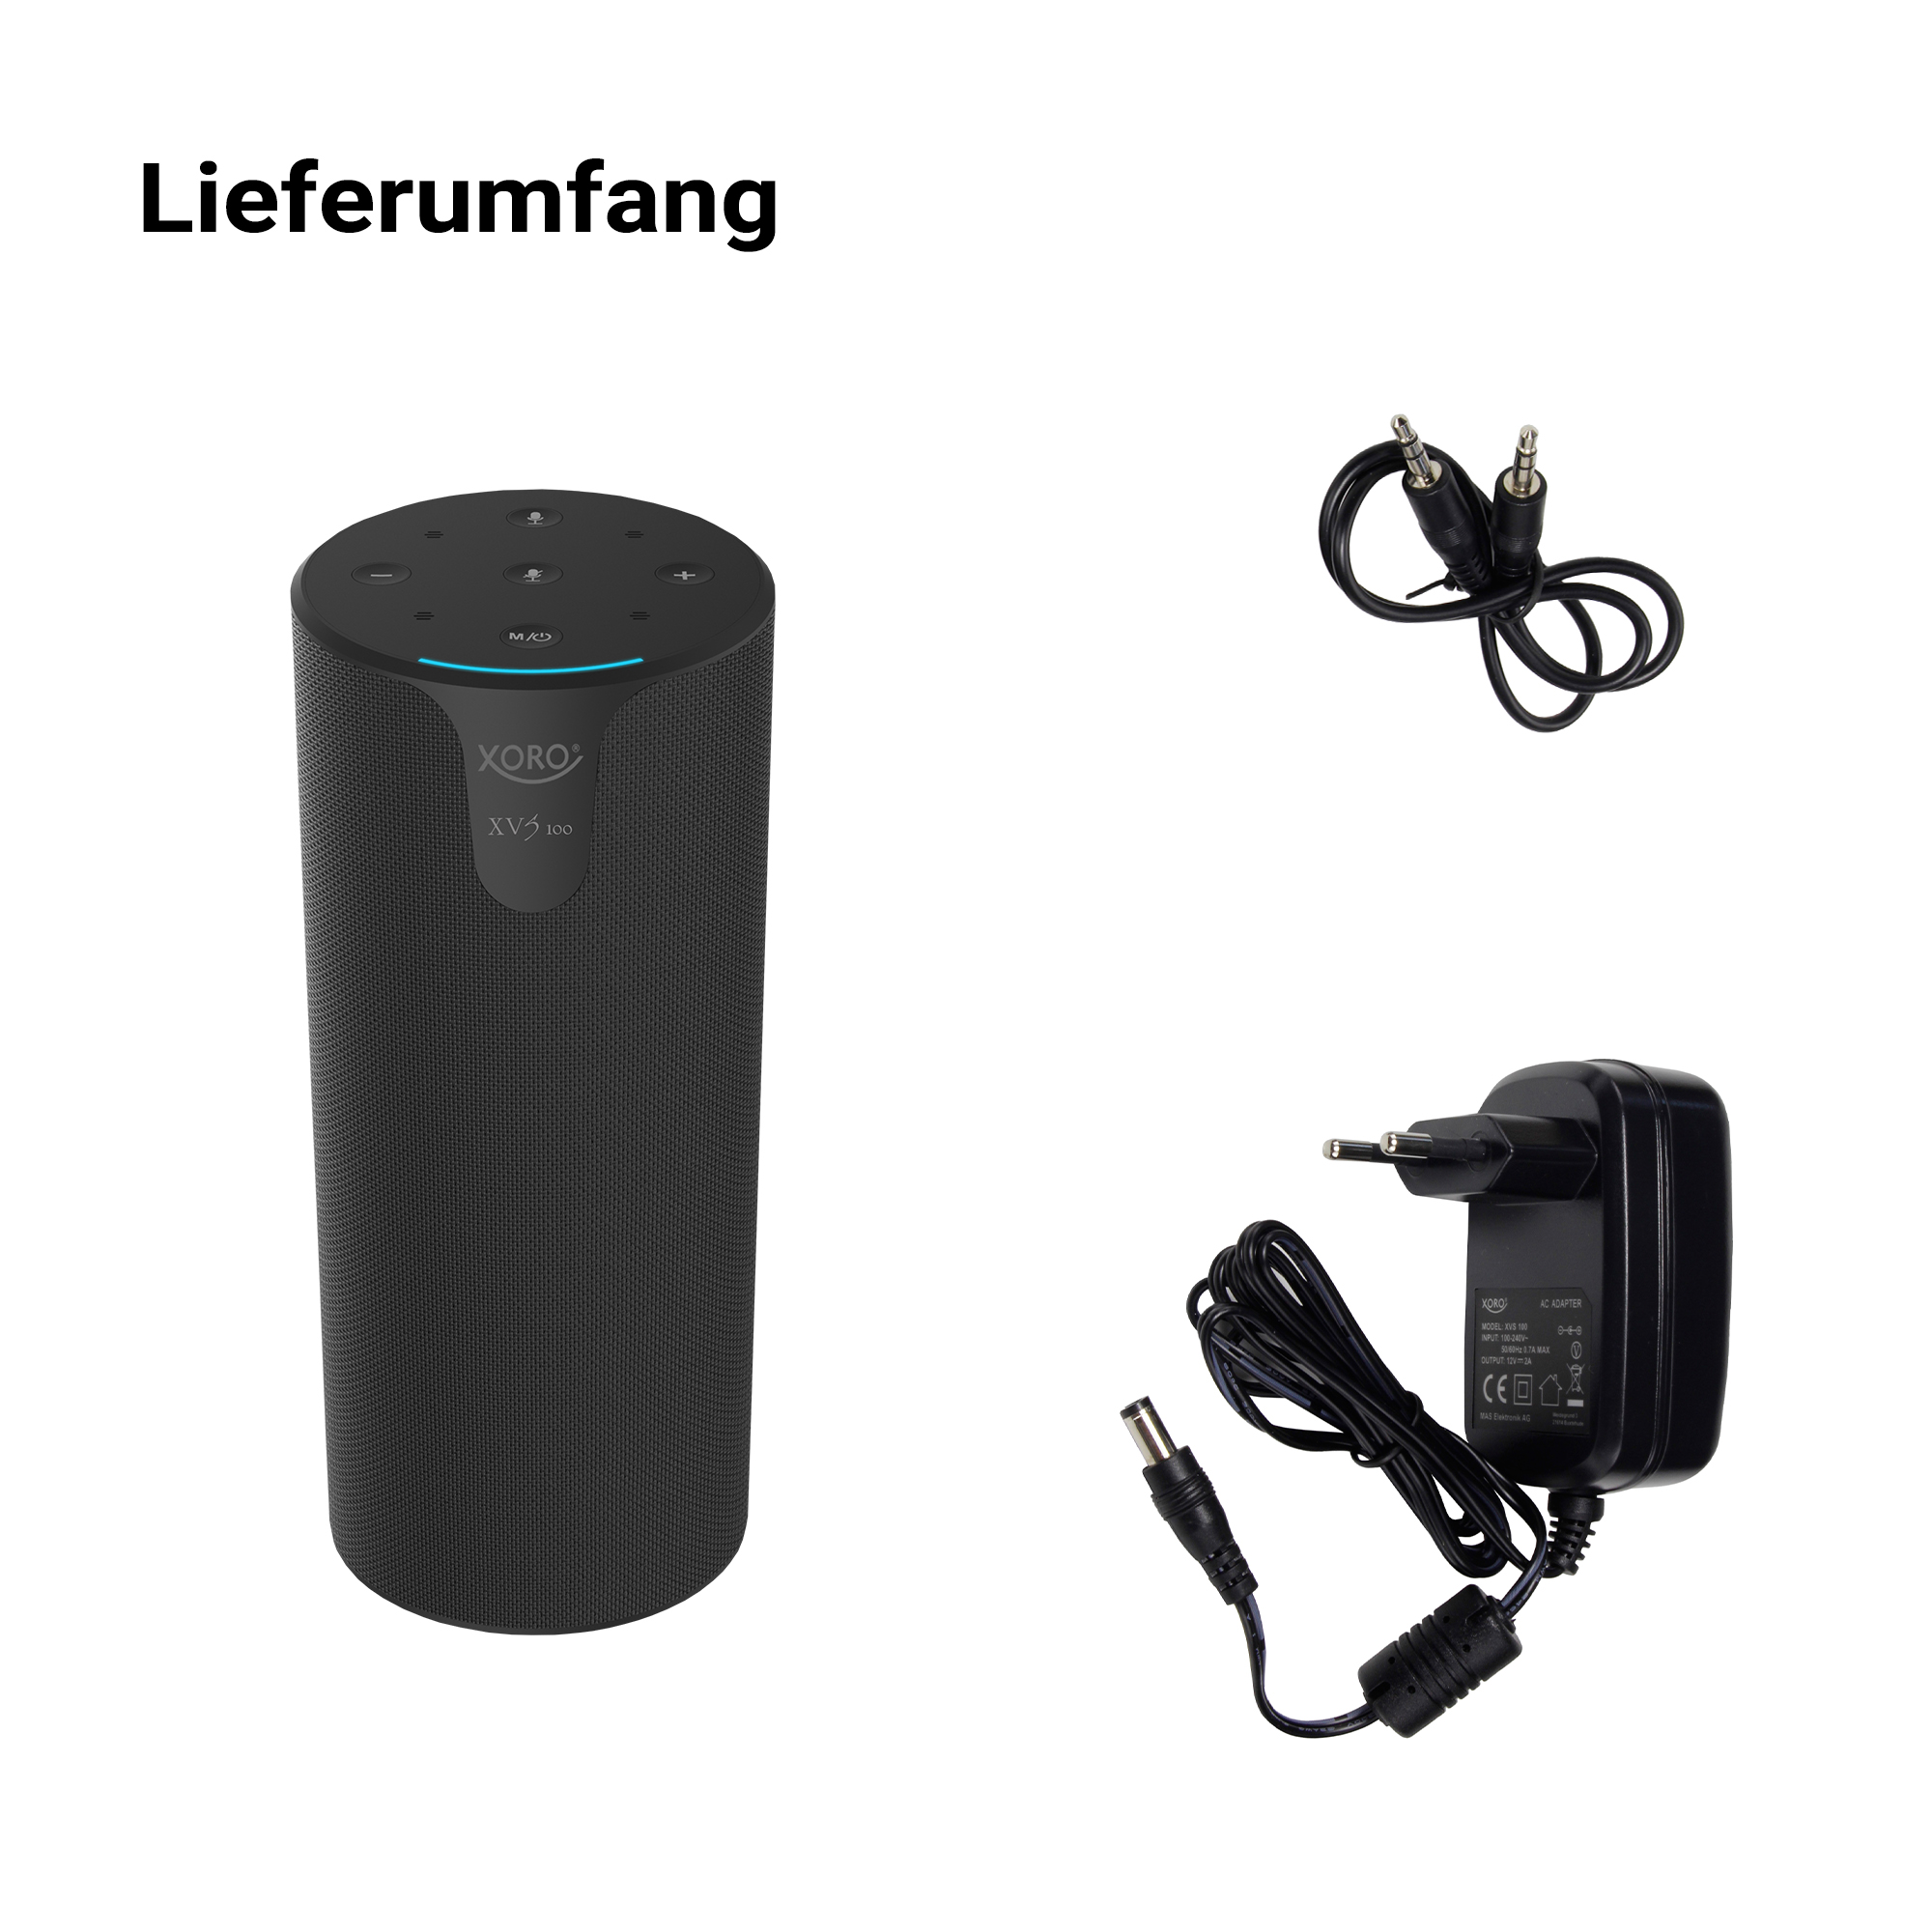 Multiroom Lautsprecher XORO Alexa 100 Sprachsteuerung XORO Schwarz + 2x10W 2200mAh Akku integrierter Lautsprecher, XVS Bluetooth 4.0 WiFi